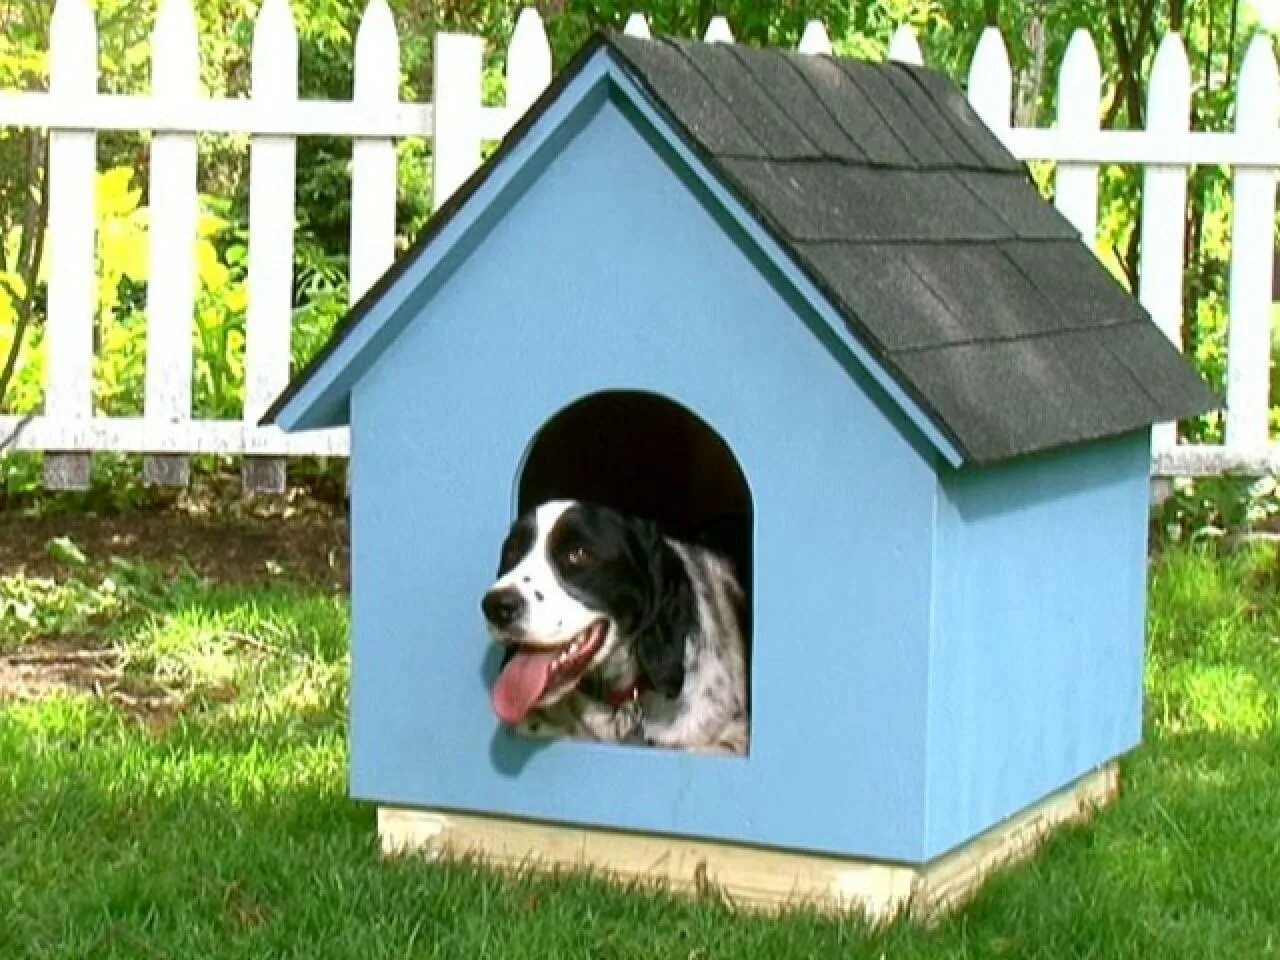 Dog house dog or alive demo. Будка для собаки из пеноблоков. Будка и скворечник. А фрейм будка для собаки. Будка из коробки для собаки своими руками.